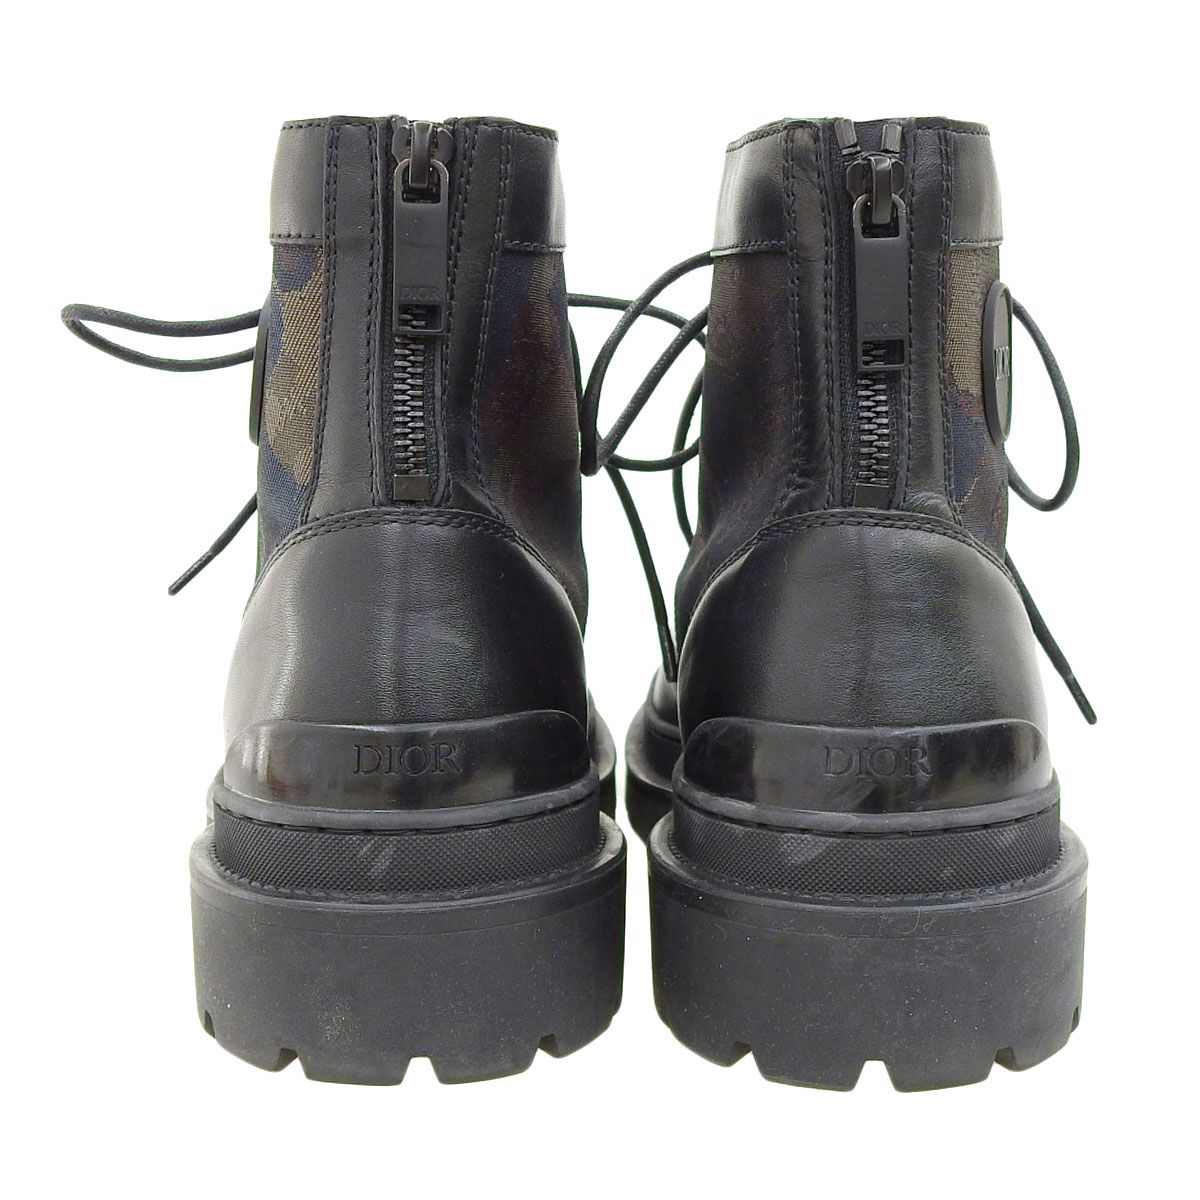 ディオール EXPLORER ショート ブーツ 3BO257ZLT H669 メンズ ブラック マルチカラー Dior  【アパレル・小物】